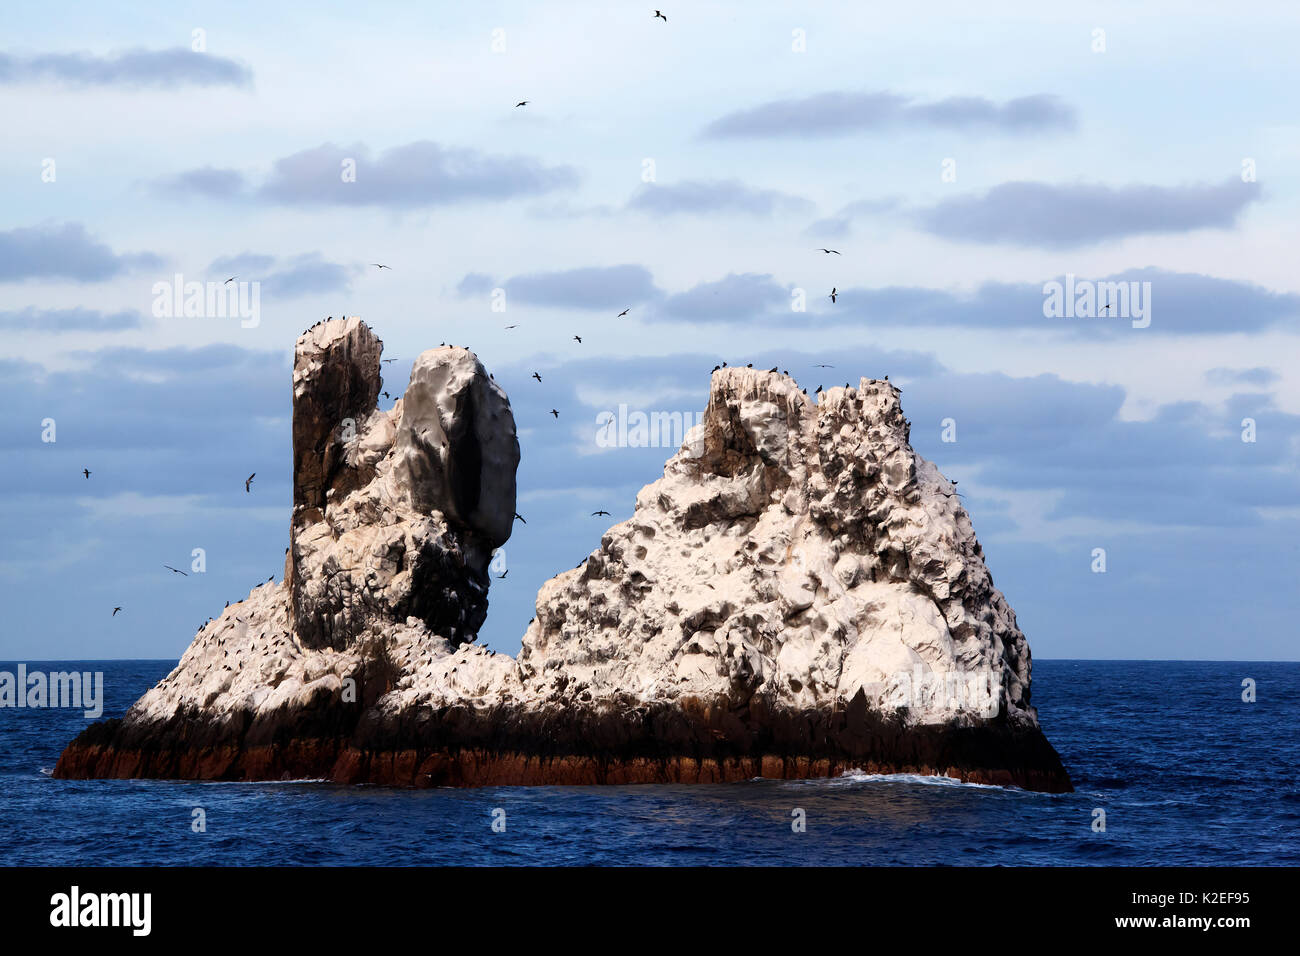 Roca Partida Islet, Réserve de biosphère de l'archipel de Revillagigedo / Archipel de Revillagigedo Site du patrimoine naturel mondial de l'UNESCO (Socorro Islands), l'océan Pacifique, l'ouest du Mexique, Janvier Banque D'Images